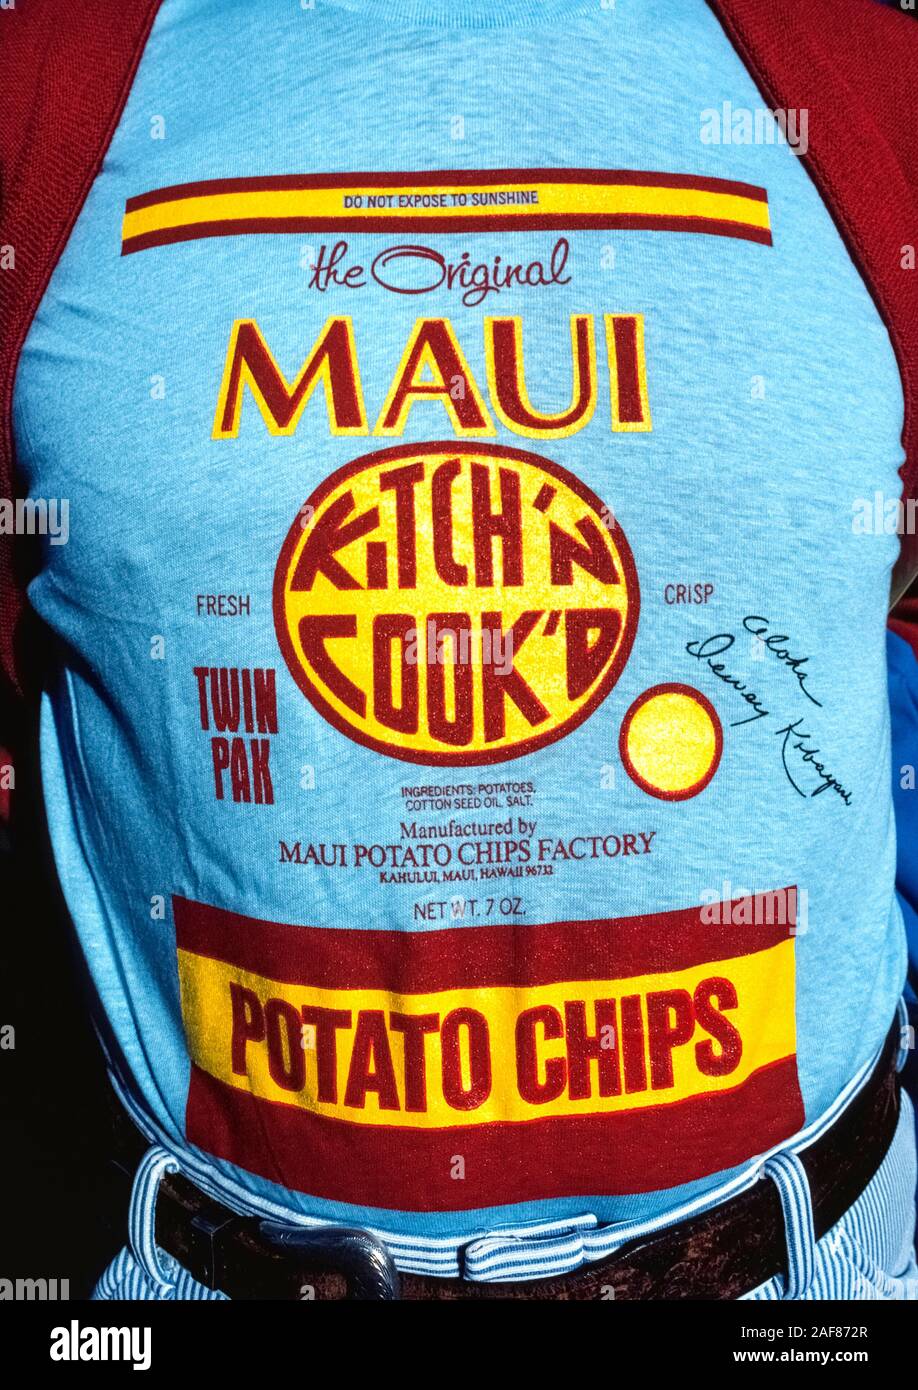 Ein Mann trägt ein blaues Hemd, dass Wiederholungen der Vorderseite einer tatsächlichen Paket von Maui Kartoffelchips, einem berühmten Snack in Maui, die seit 1956 in der Hawaiianischen Inseln, USA bekannt ist. Obwohl andere Hersteller rufen Sie jetzt Ihre Marken 'Maui' Chips, das ursprüngliche Produkt ist durch seine roten und gelben Etikett und runden' Kitch'n Cook 'd'-Logo gekennzeichnet. Die 'Do Nicht Sunshine' Warnung ist, da die Chips in klare Plastiktüten verpackt und UV-Strahlen der Sonne und Wärme wird dazu führen, dass die Chips weich und schmeckt abgestanden, da keine chemischen Konservierungsstoffe verwendet werden. Stockfoto